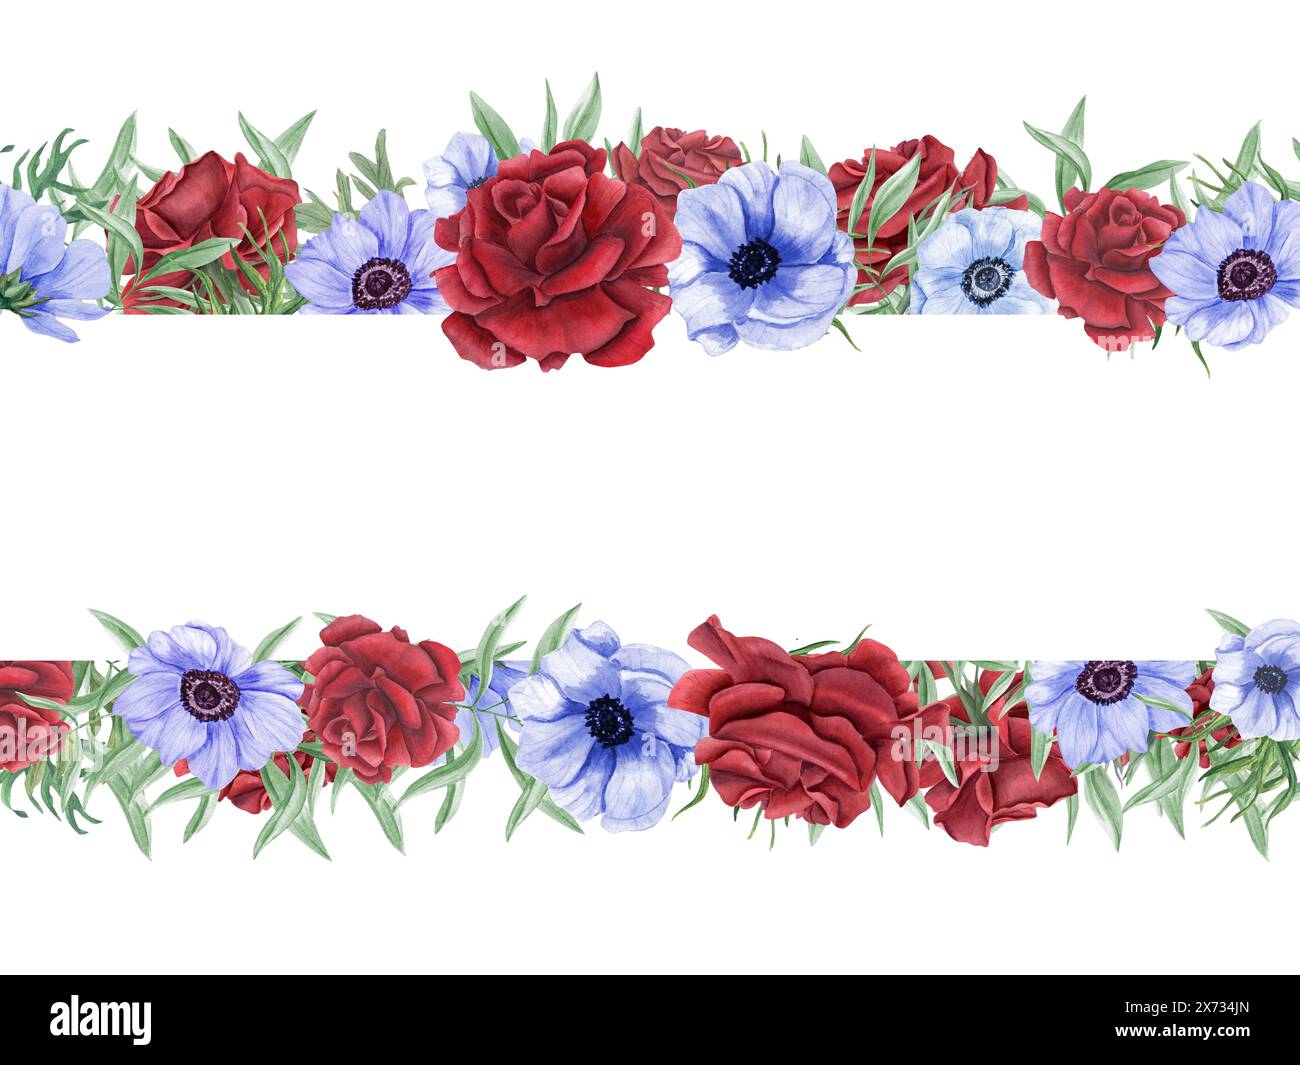 Rosen und Anemonen. Rote, blaue Blüten mit grünen Eukalyptusblättern. Horizontaler Rahmen mit Blumenmuster und leerem Platz für Text. Gedenktag, Unabhängigkeitstag Stockfoto